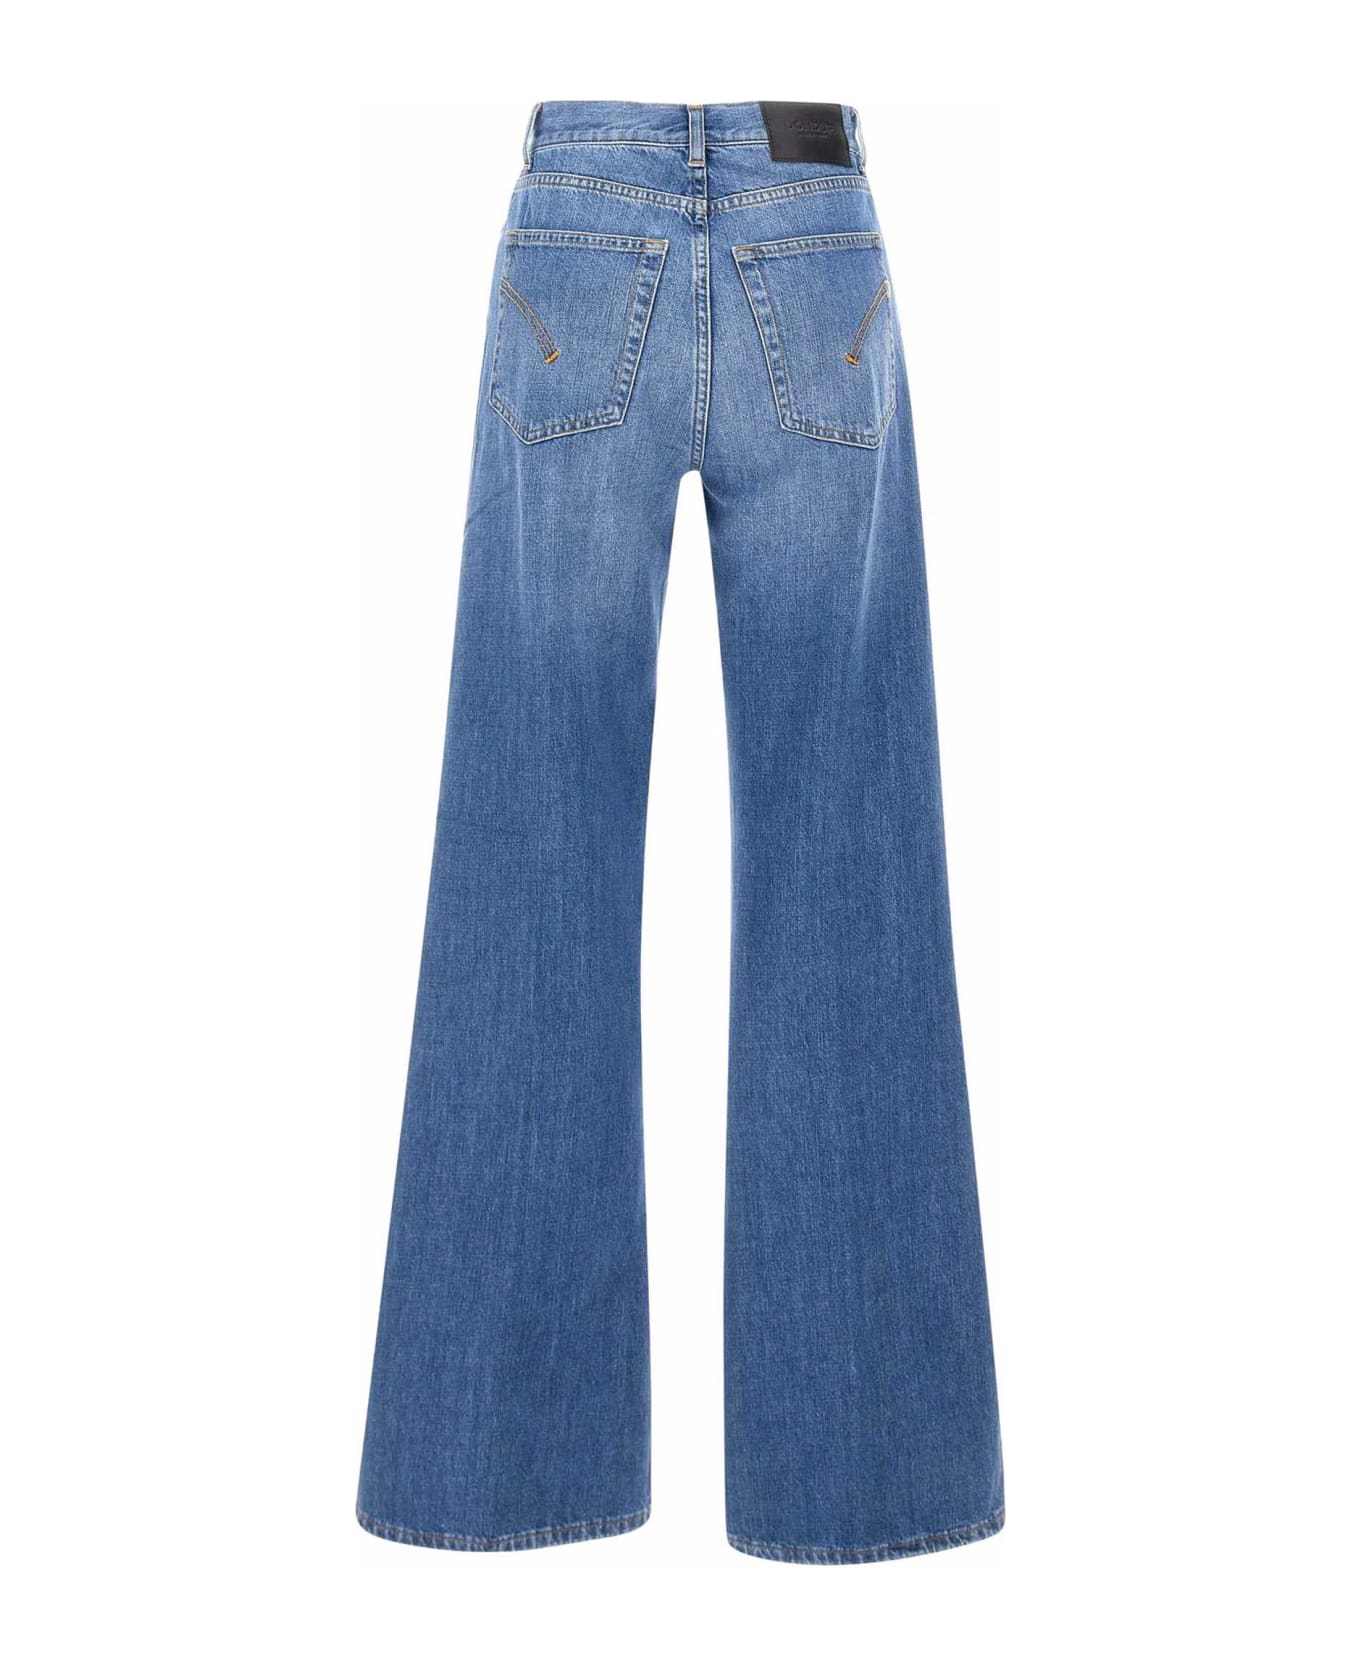 Dondup Blue Cotton Denim Jeans - blu デニム